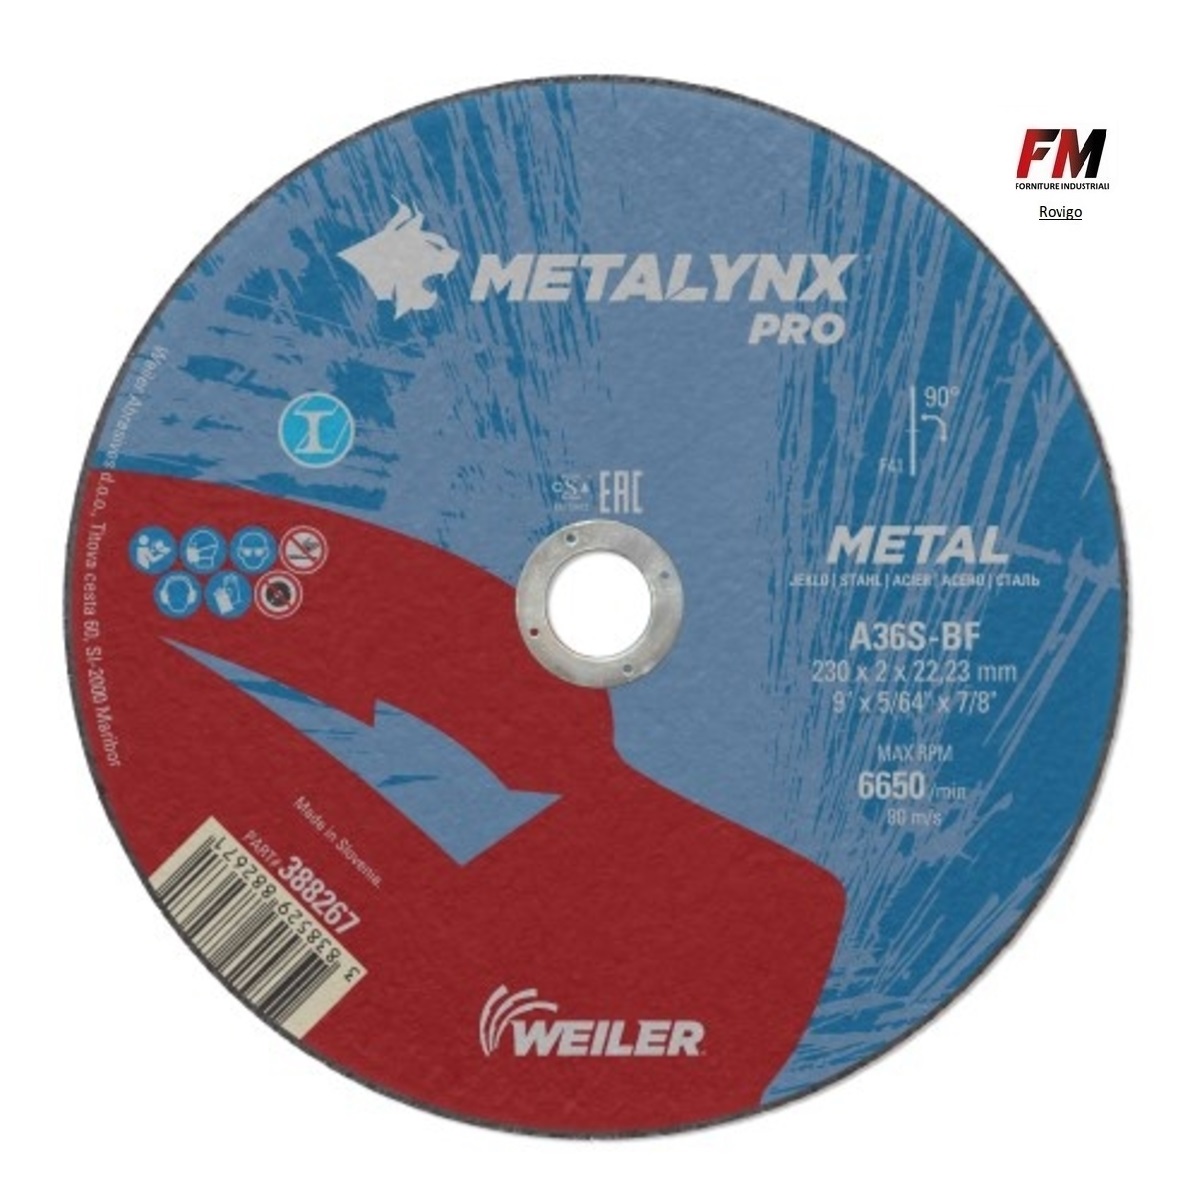 METALYNX PRO Metal A36S